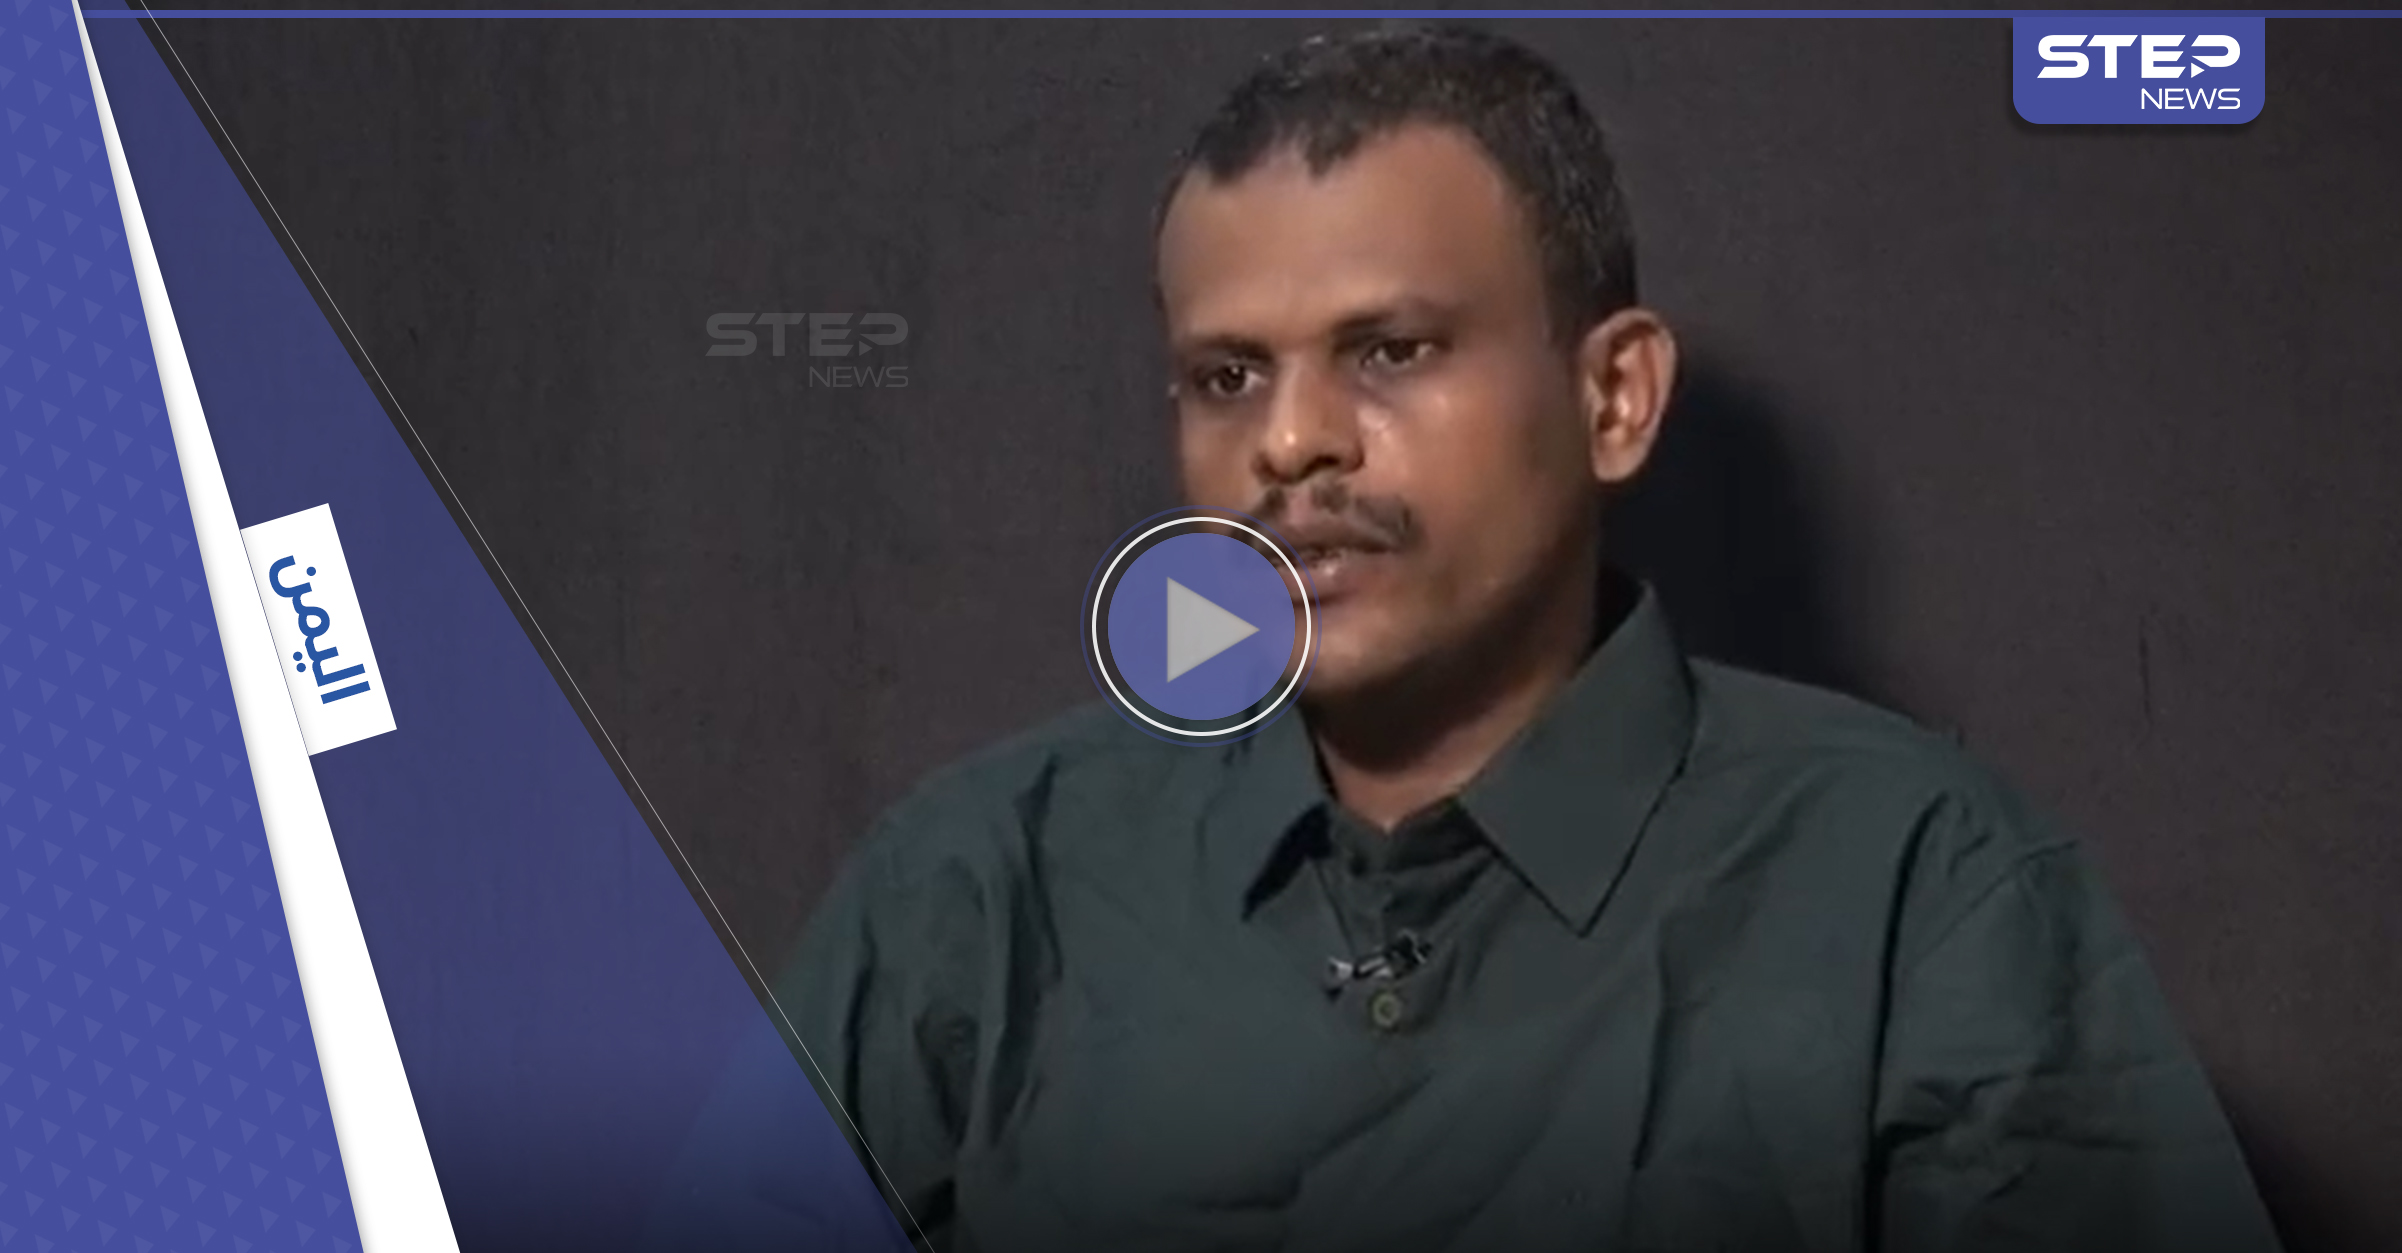 بالفيديو|| اعترافات خطيرة لخلية تهريب تابعة لـ ميليشيا الحوثي